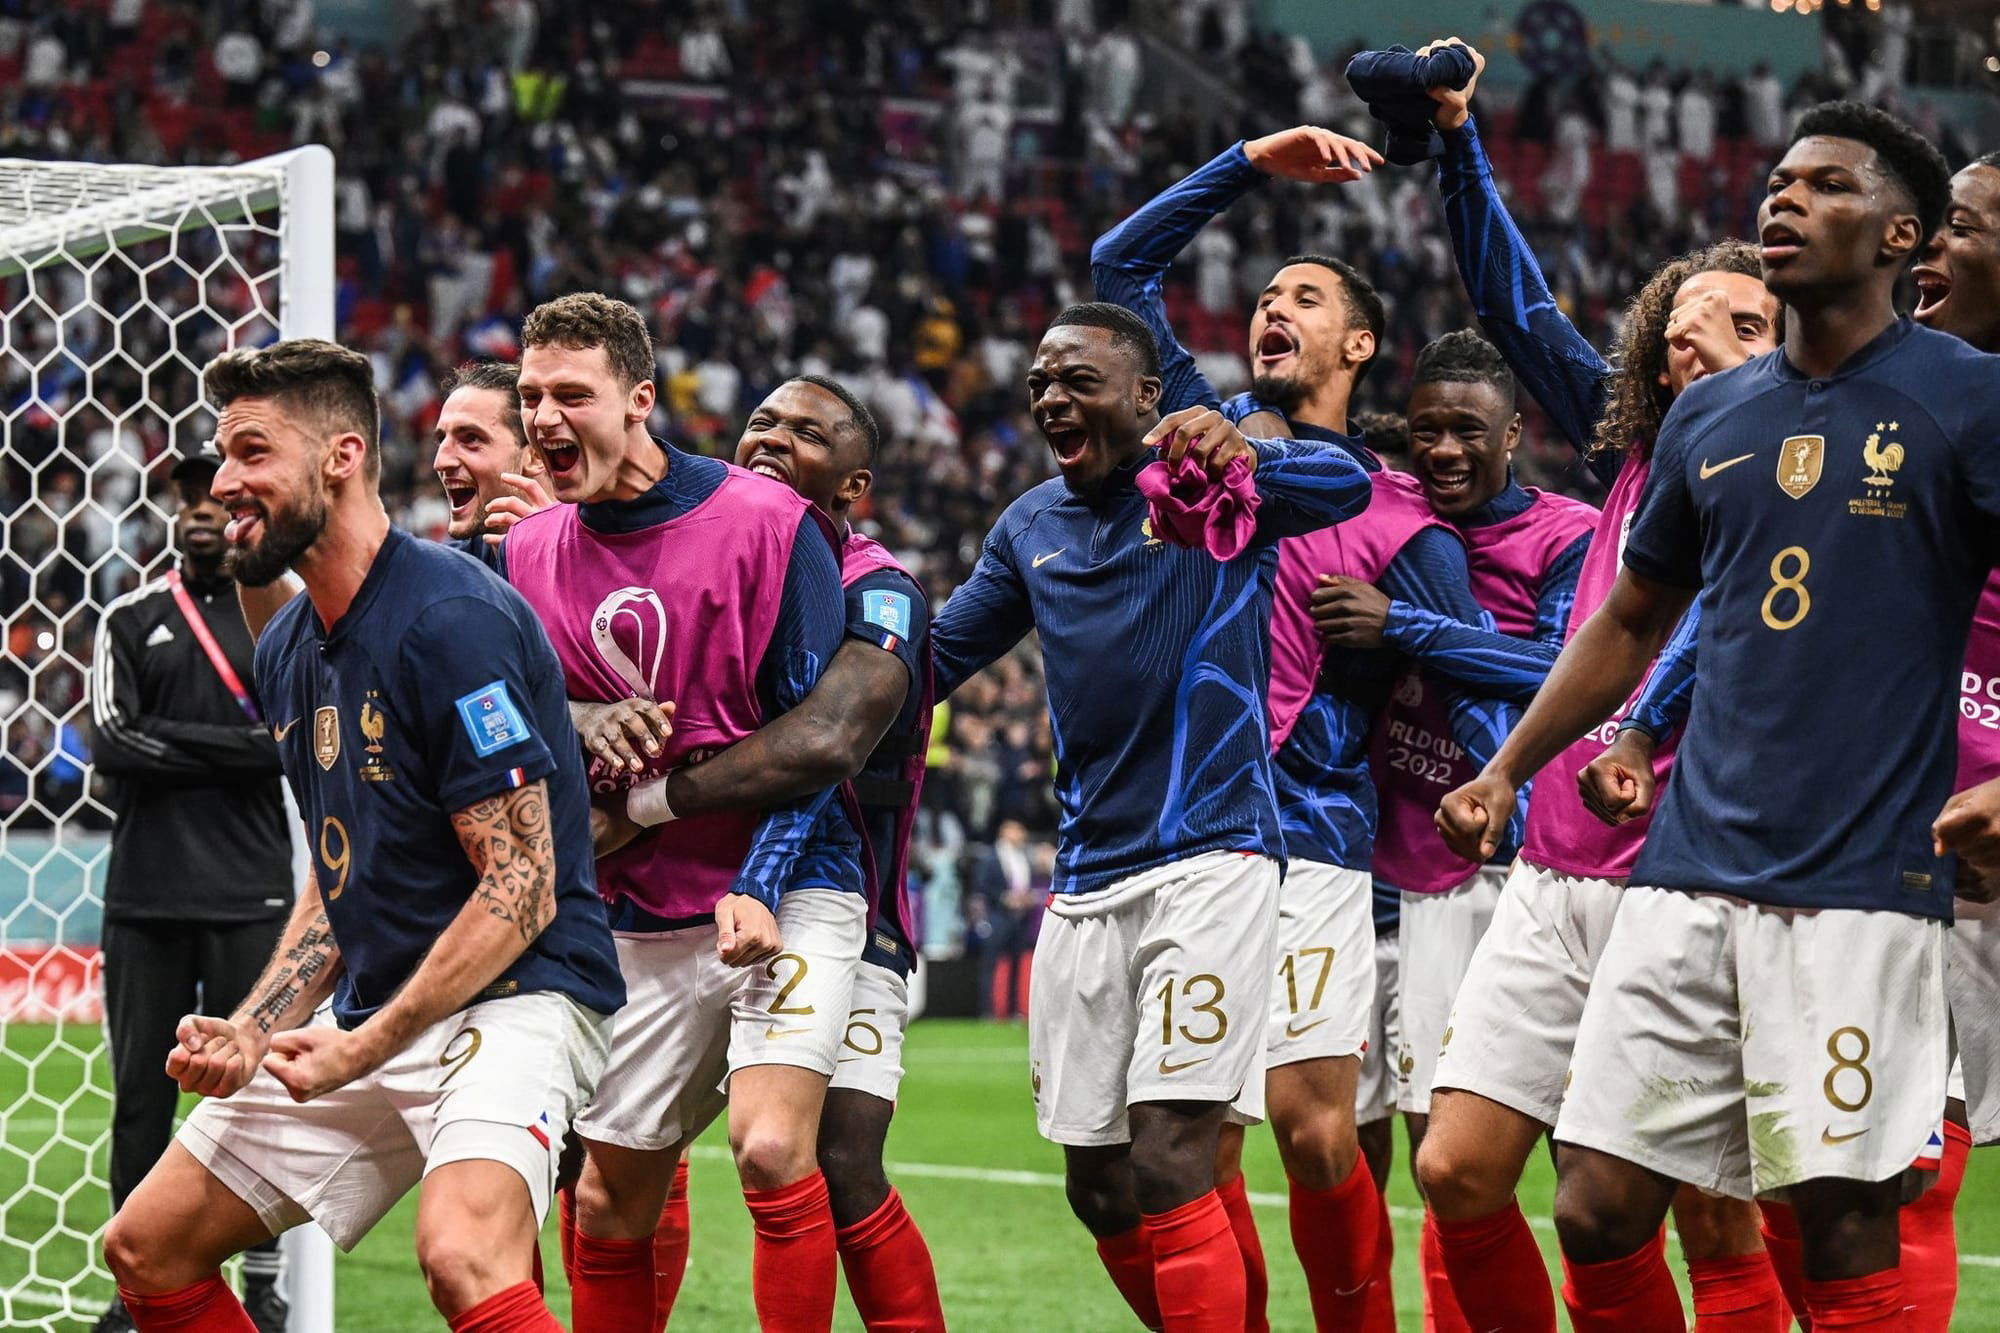 2022 年世界盃大熱法國隊 兩主力球員對戰摩洛哥隊前夕突發病倒